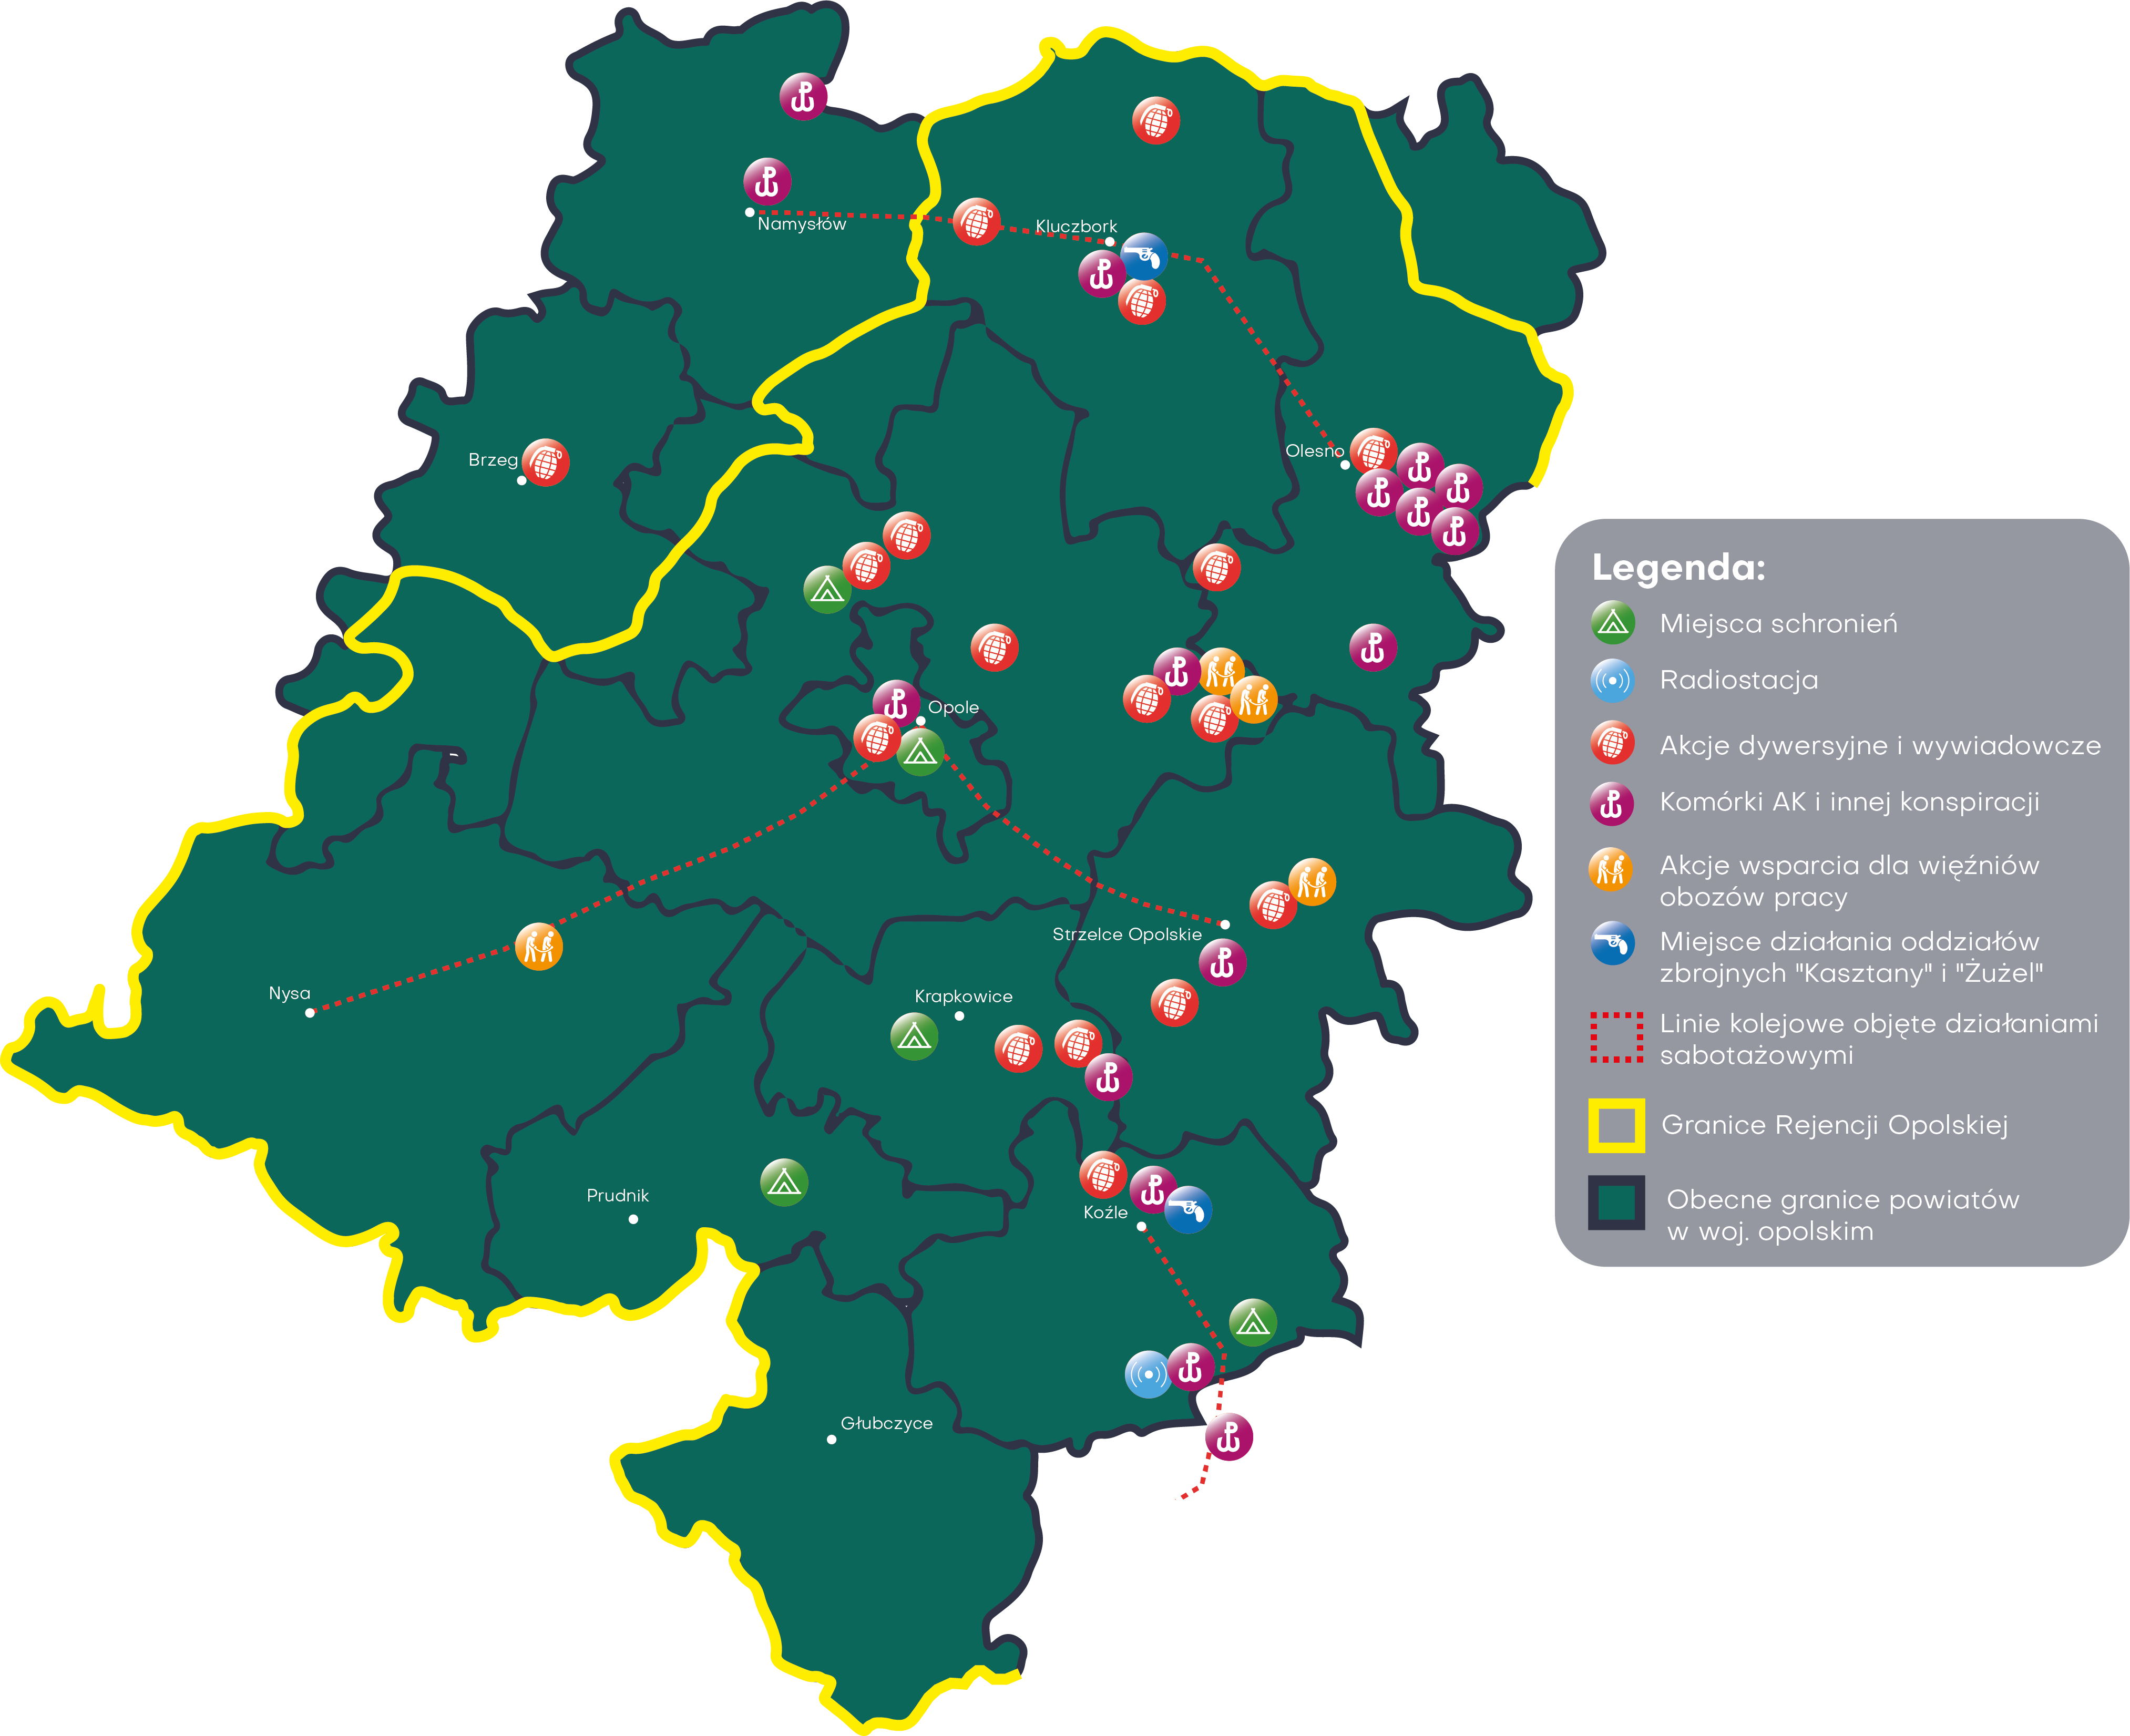 Mapa walk opolskiego podziemia na terenie obecnego województwa opolskiego w czasie II wojny światowej.